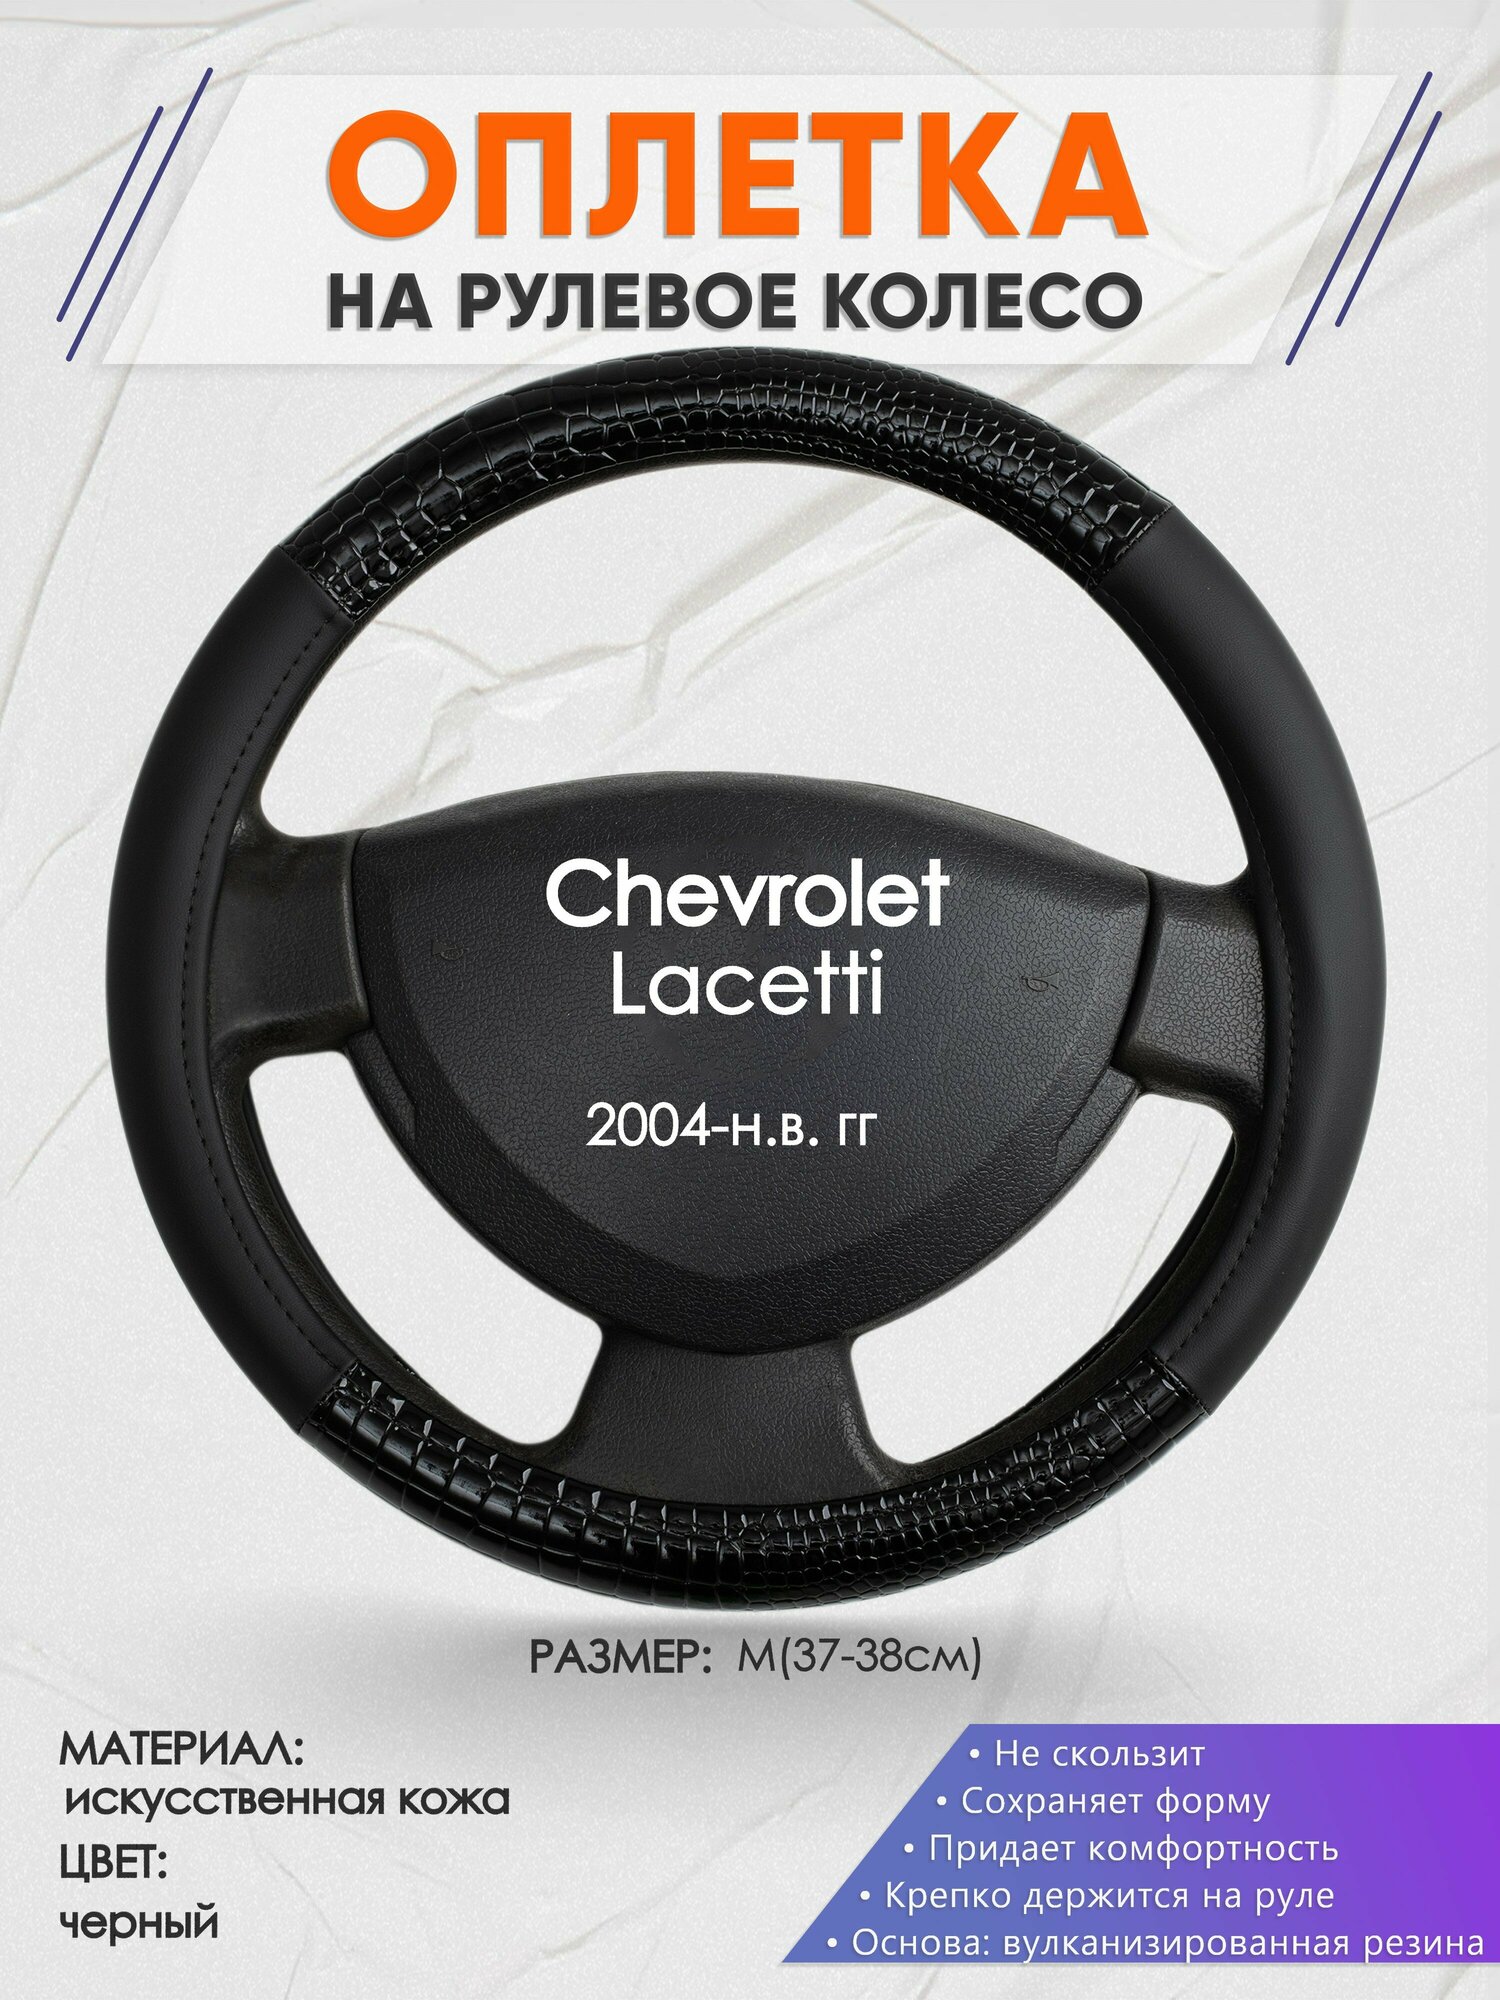 Оплетка на руль для Chevrolet Lacetti (Шевроле Лачети) 2004-н. в, M(37-38см), Искусственная кожа 83